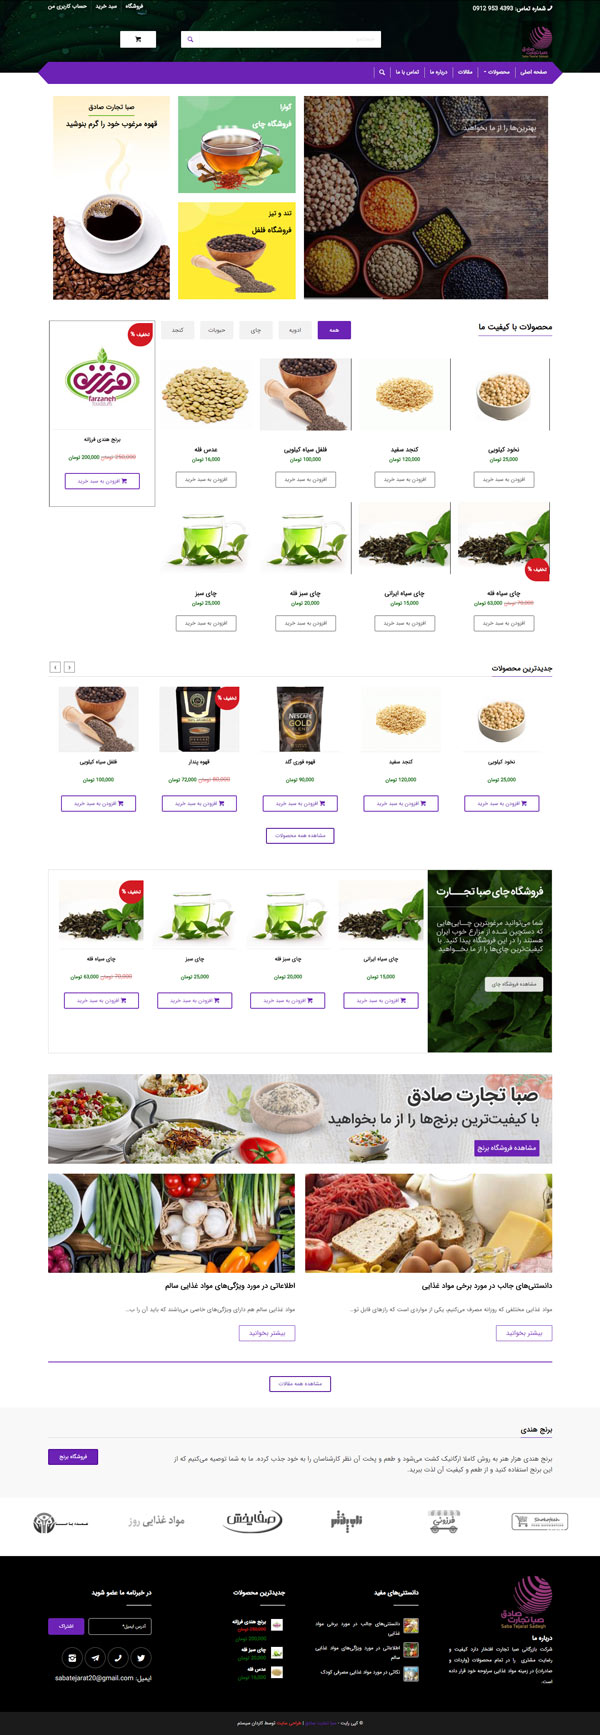 طراحی سایت صبا تجارت صادق | شرکت پخش مواد غذایی